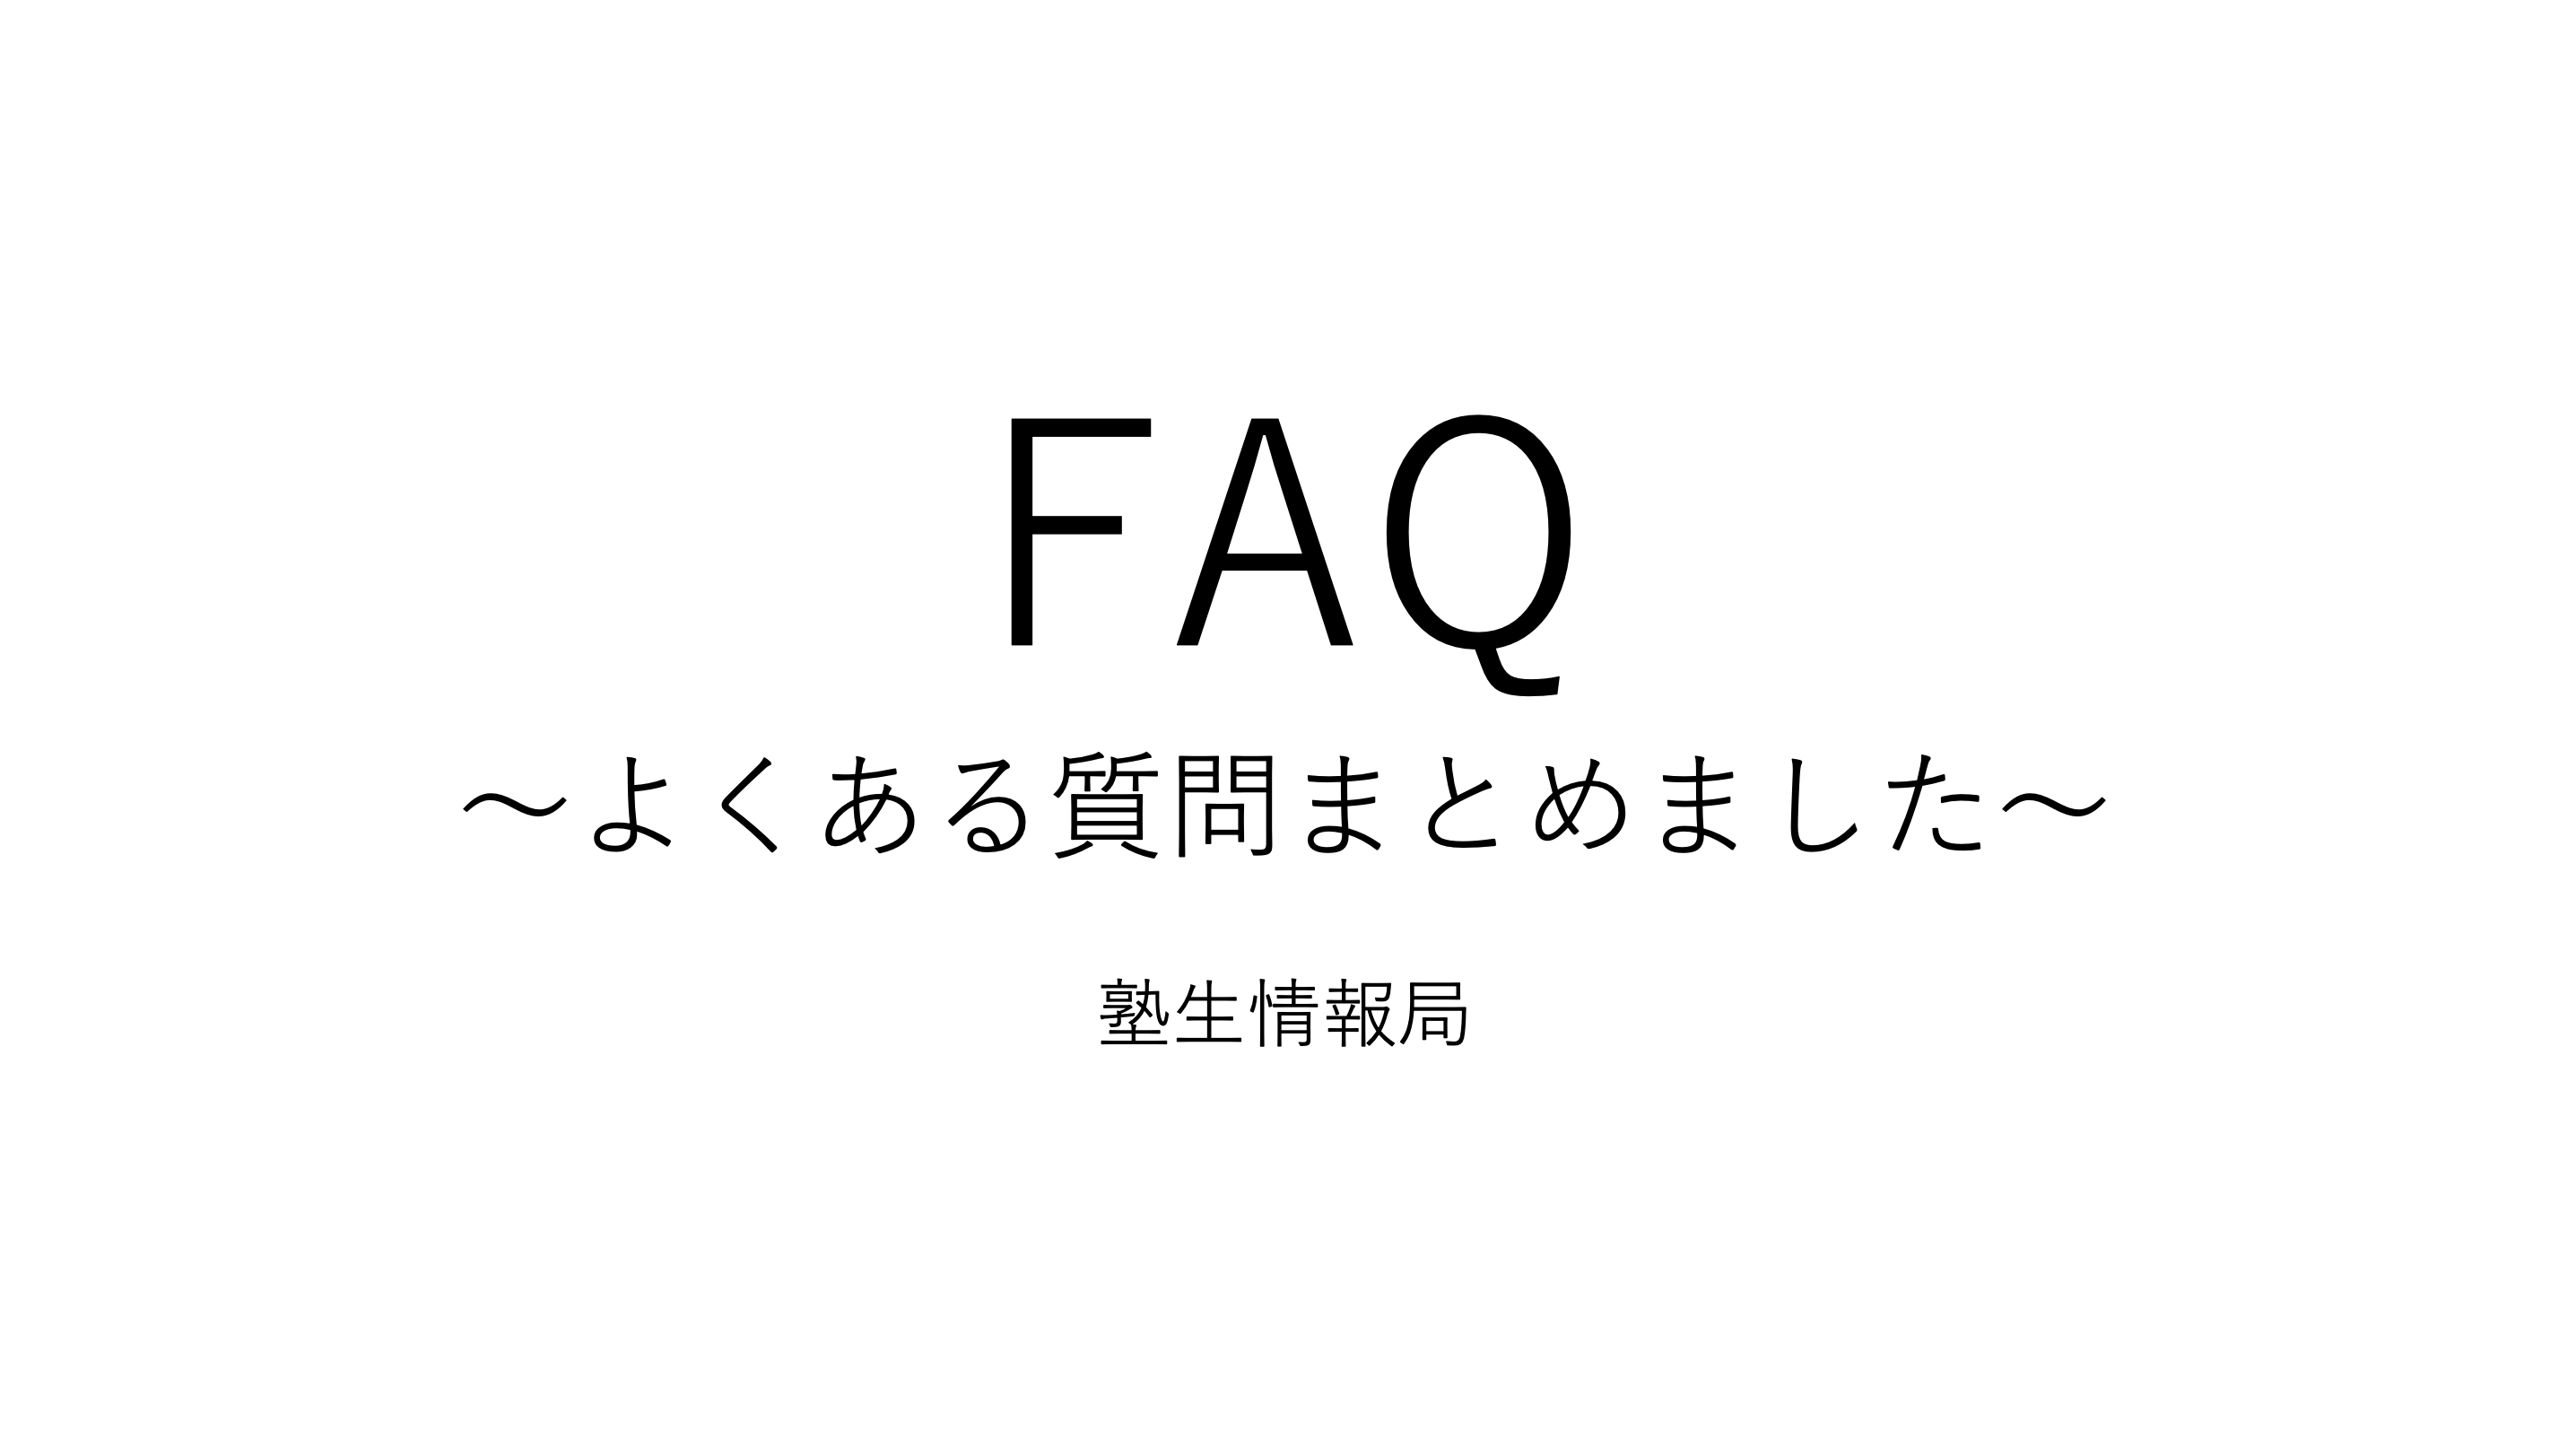 慶應に関するfaq45 よくある質問まとめました 塾生情報局